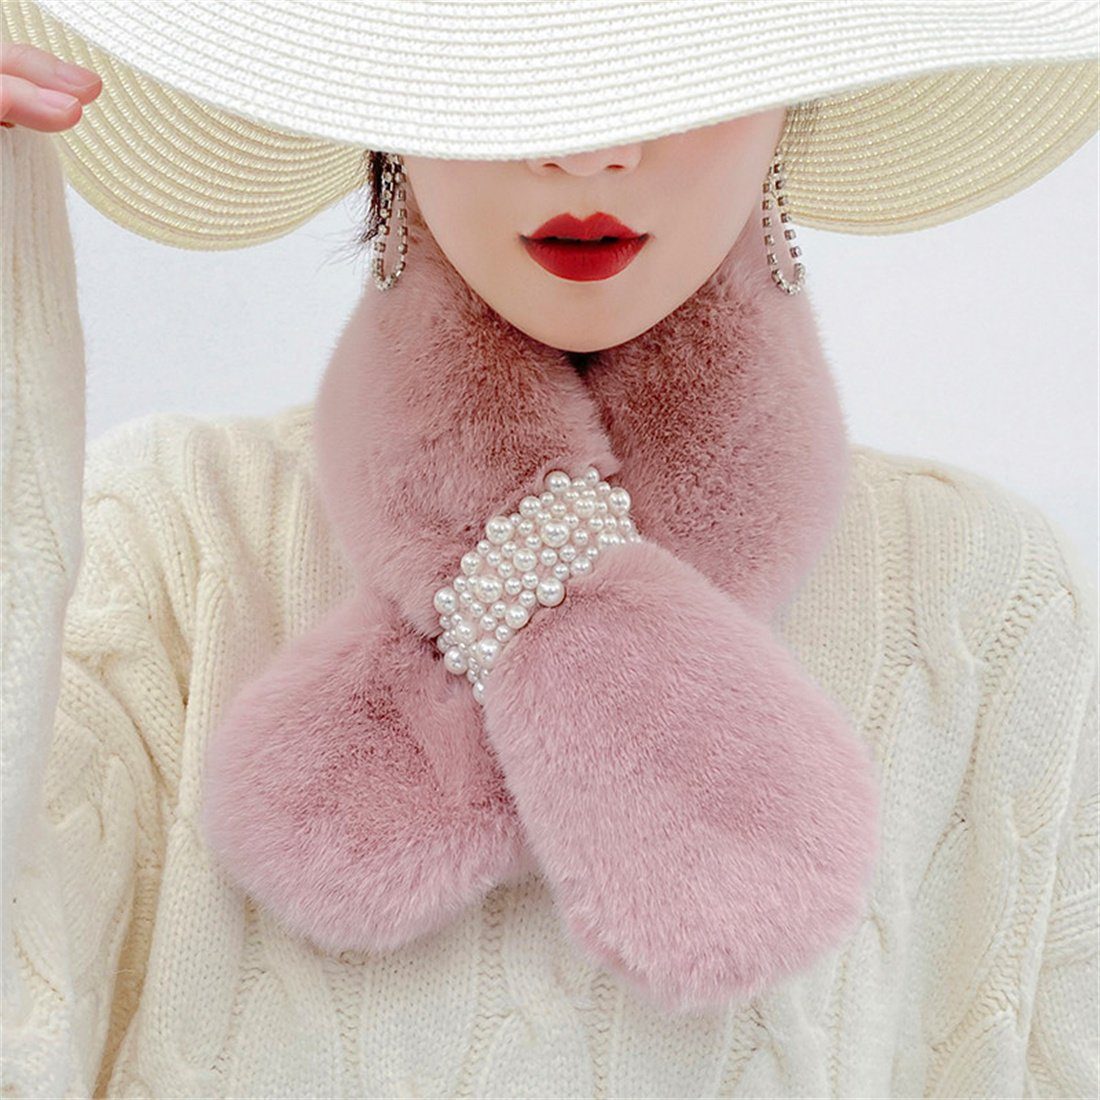 Die günstigen Neuerscheinungen von heute DÖRÖY Modeschal Kaninchen Faux Mode Otter Rosa Plüsch Kreuz Schal Warm Perle Frauen Schal